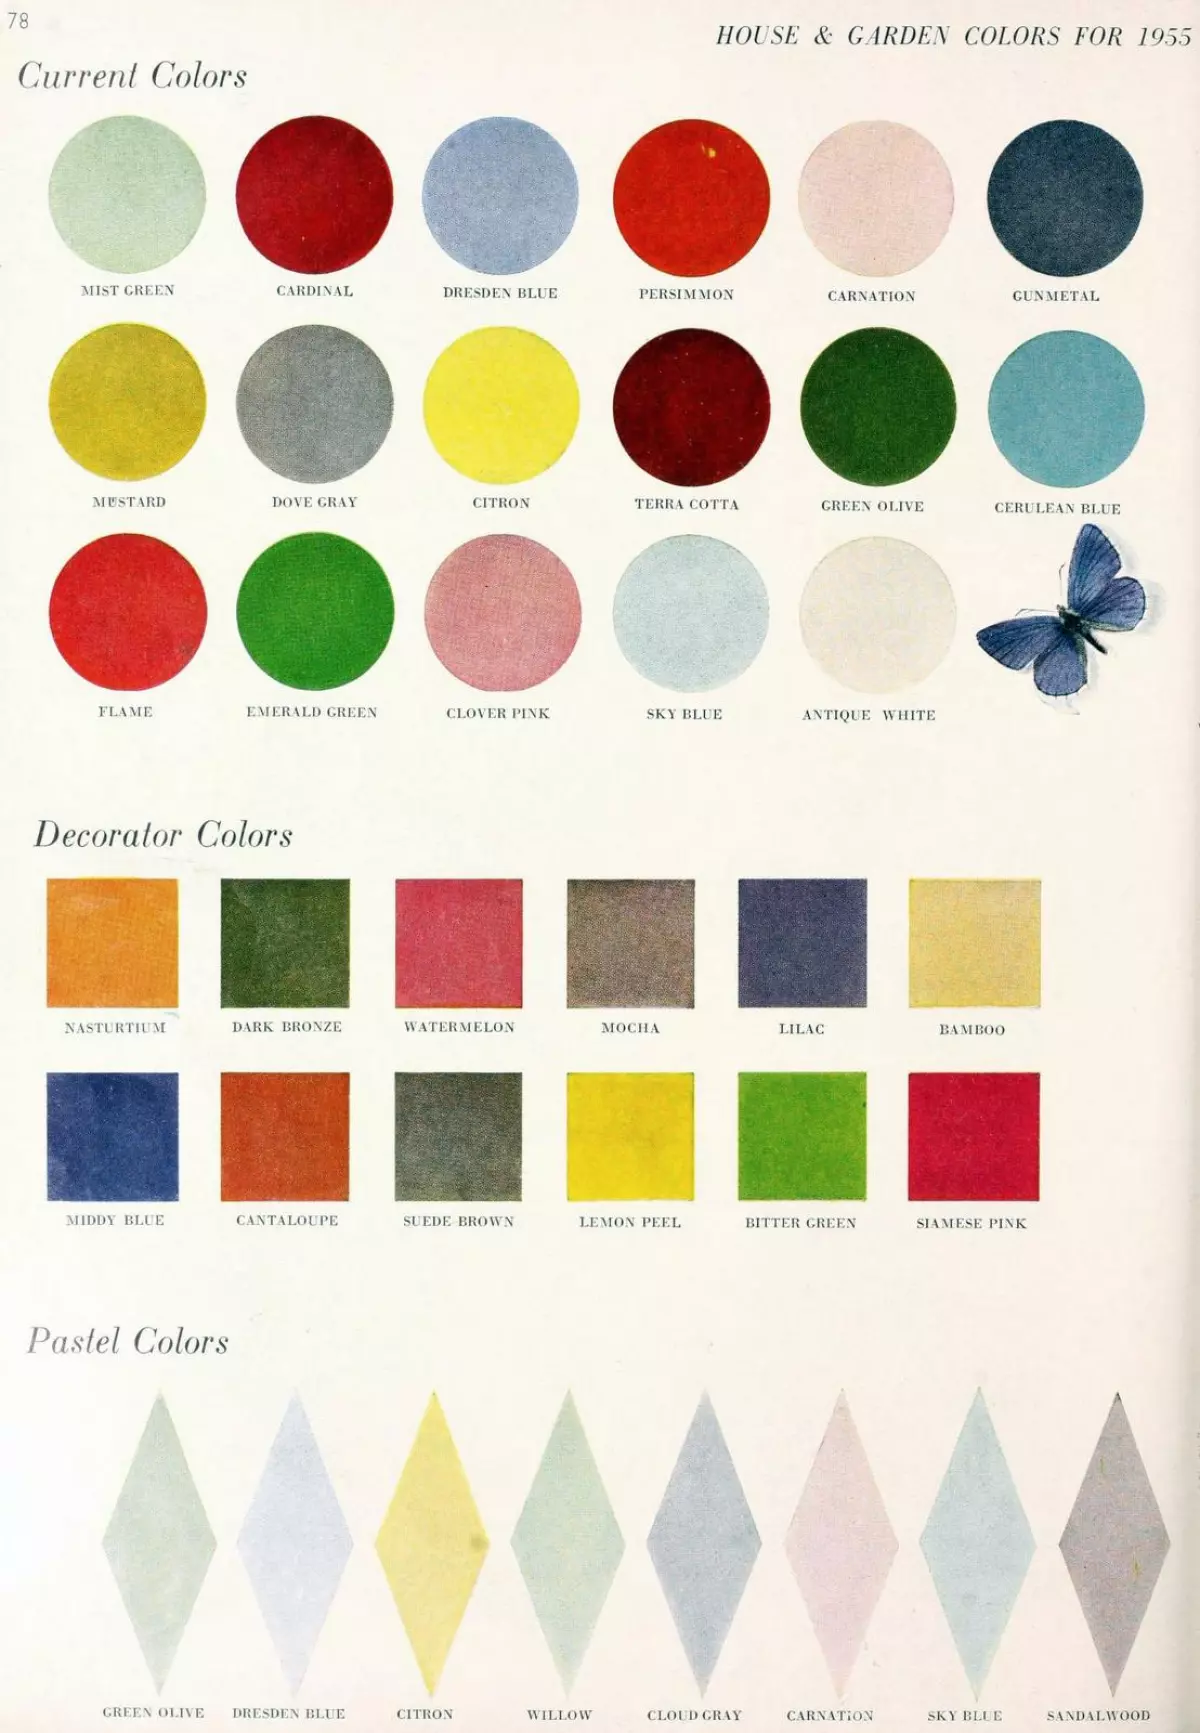 Vintage home decor paint colors for 1955